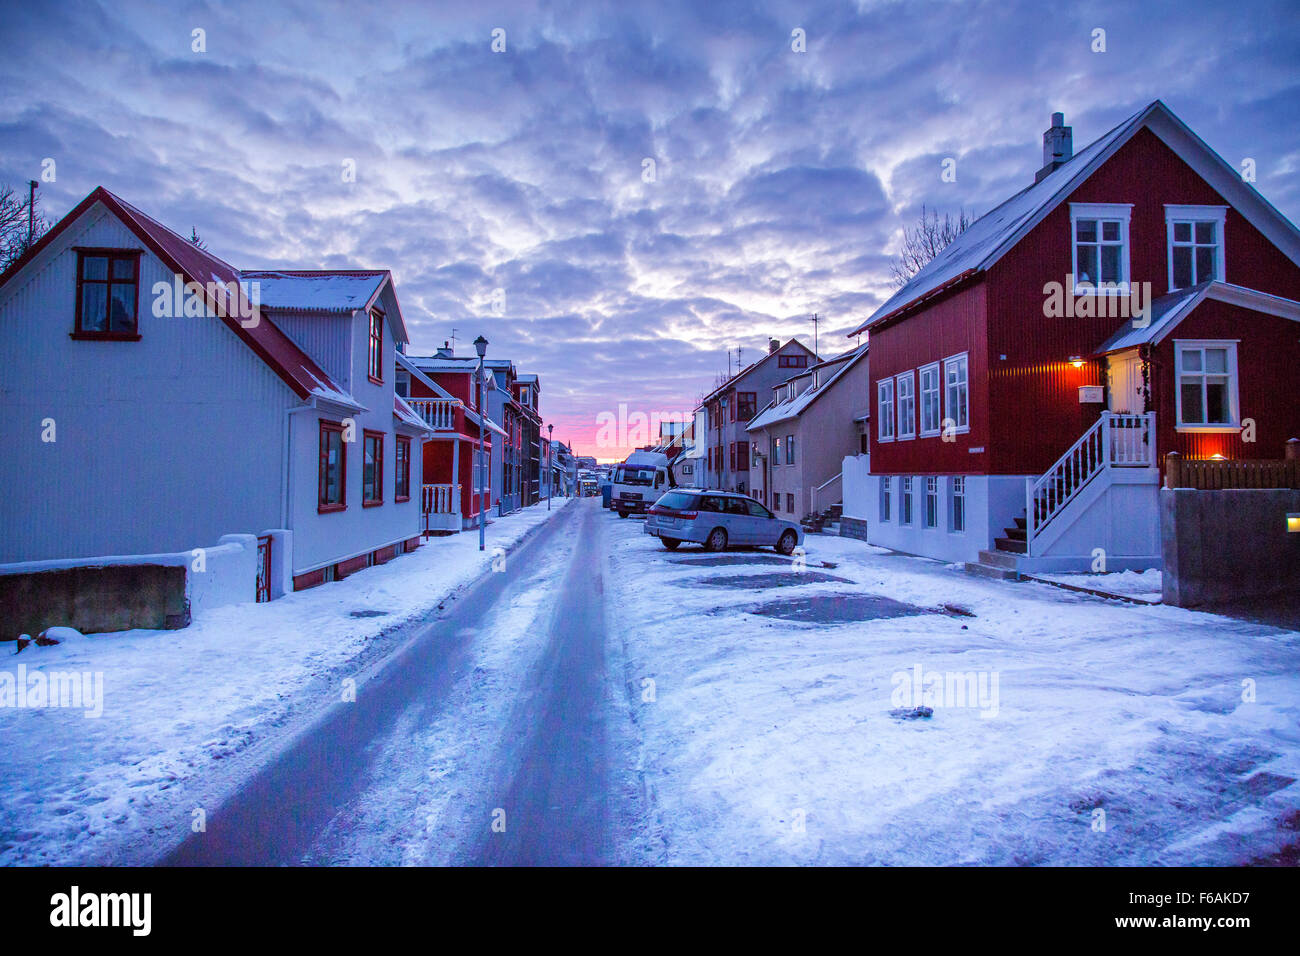 Photos: Winter style on Reykjavík's streets